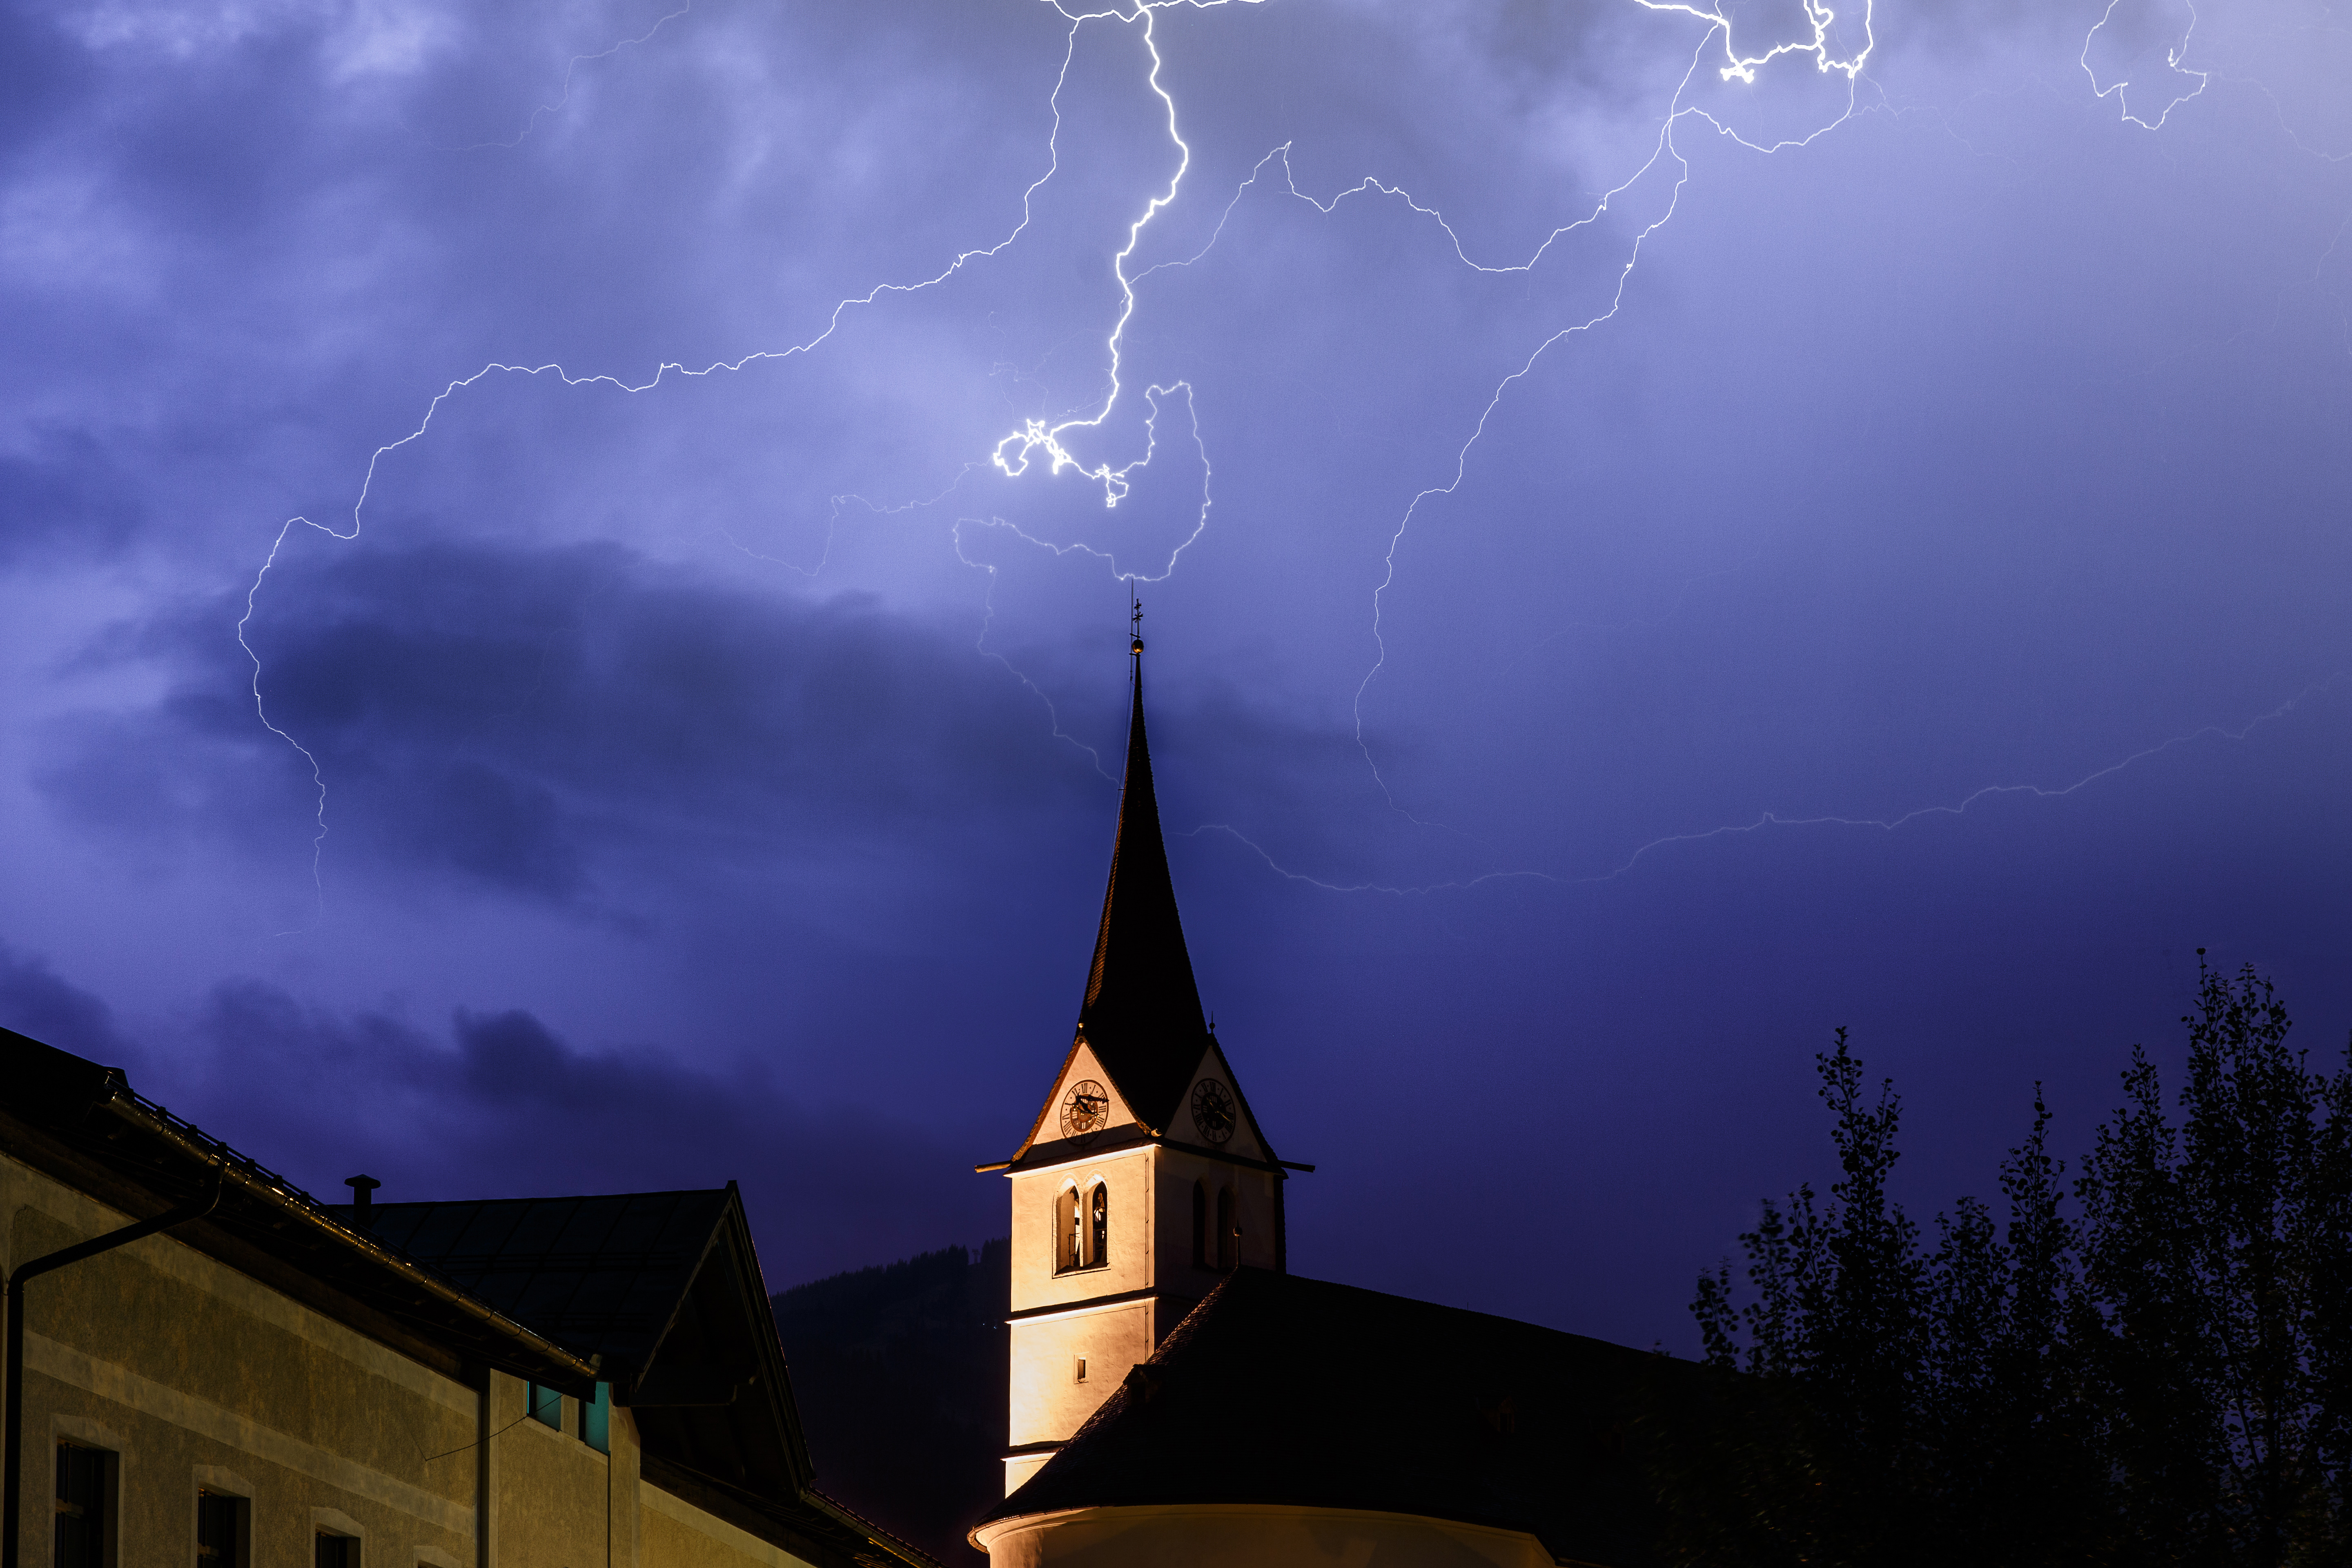 Un orage avec une église au premier plan | Source : Shutterstock